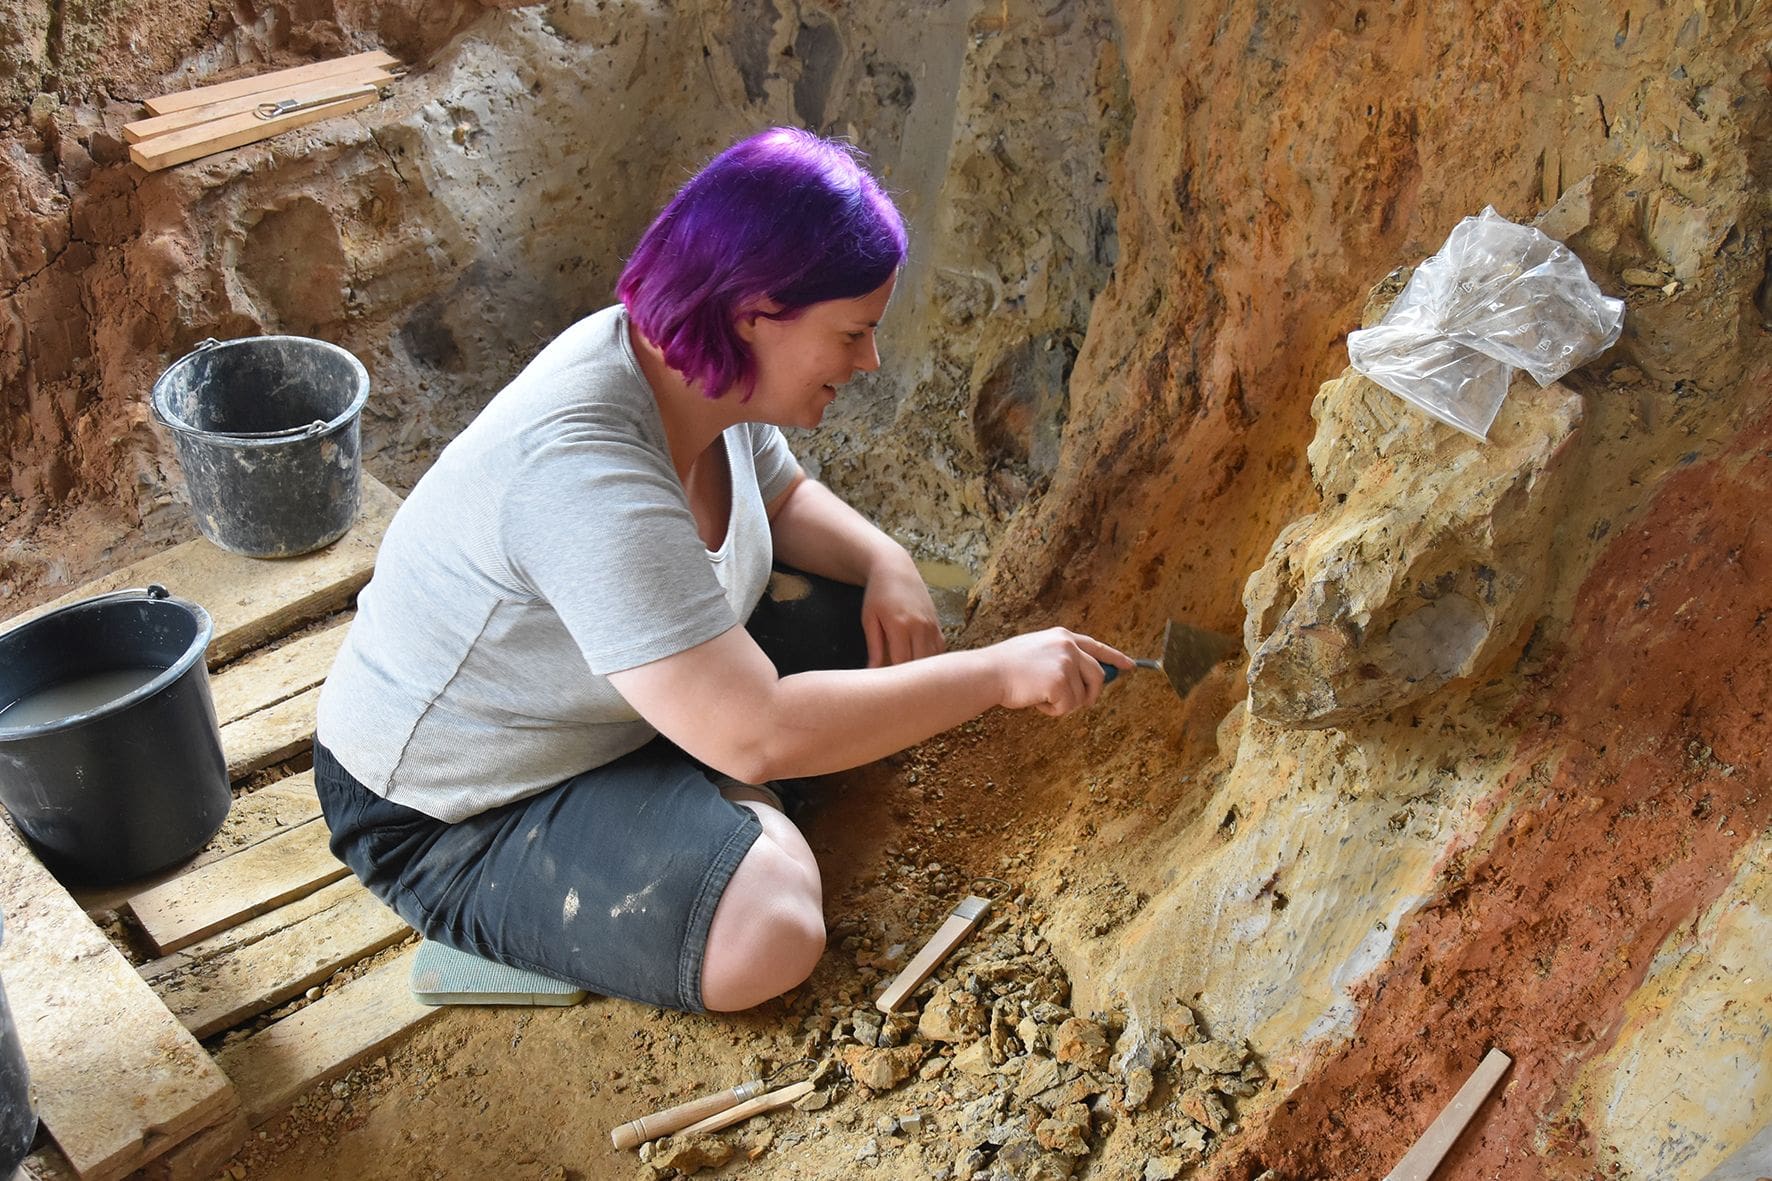 Die Fundstelle bei Balve liefert keine großen Knochen oder Skelette. Die Fossilien sind meinst klein und fragmentarisch erhalten. Die Grabungsmethoden sind entsprechend kleinteilig - Foto LWL/Schwermann